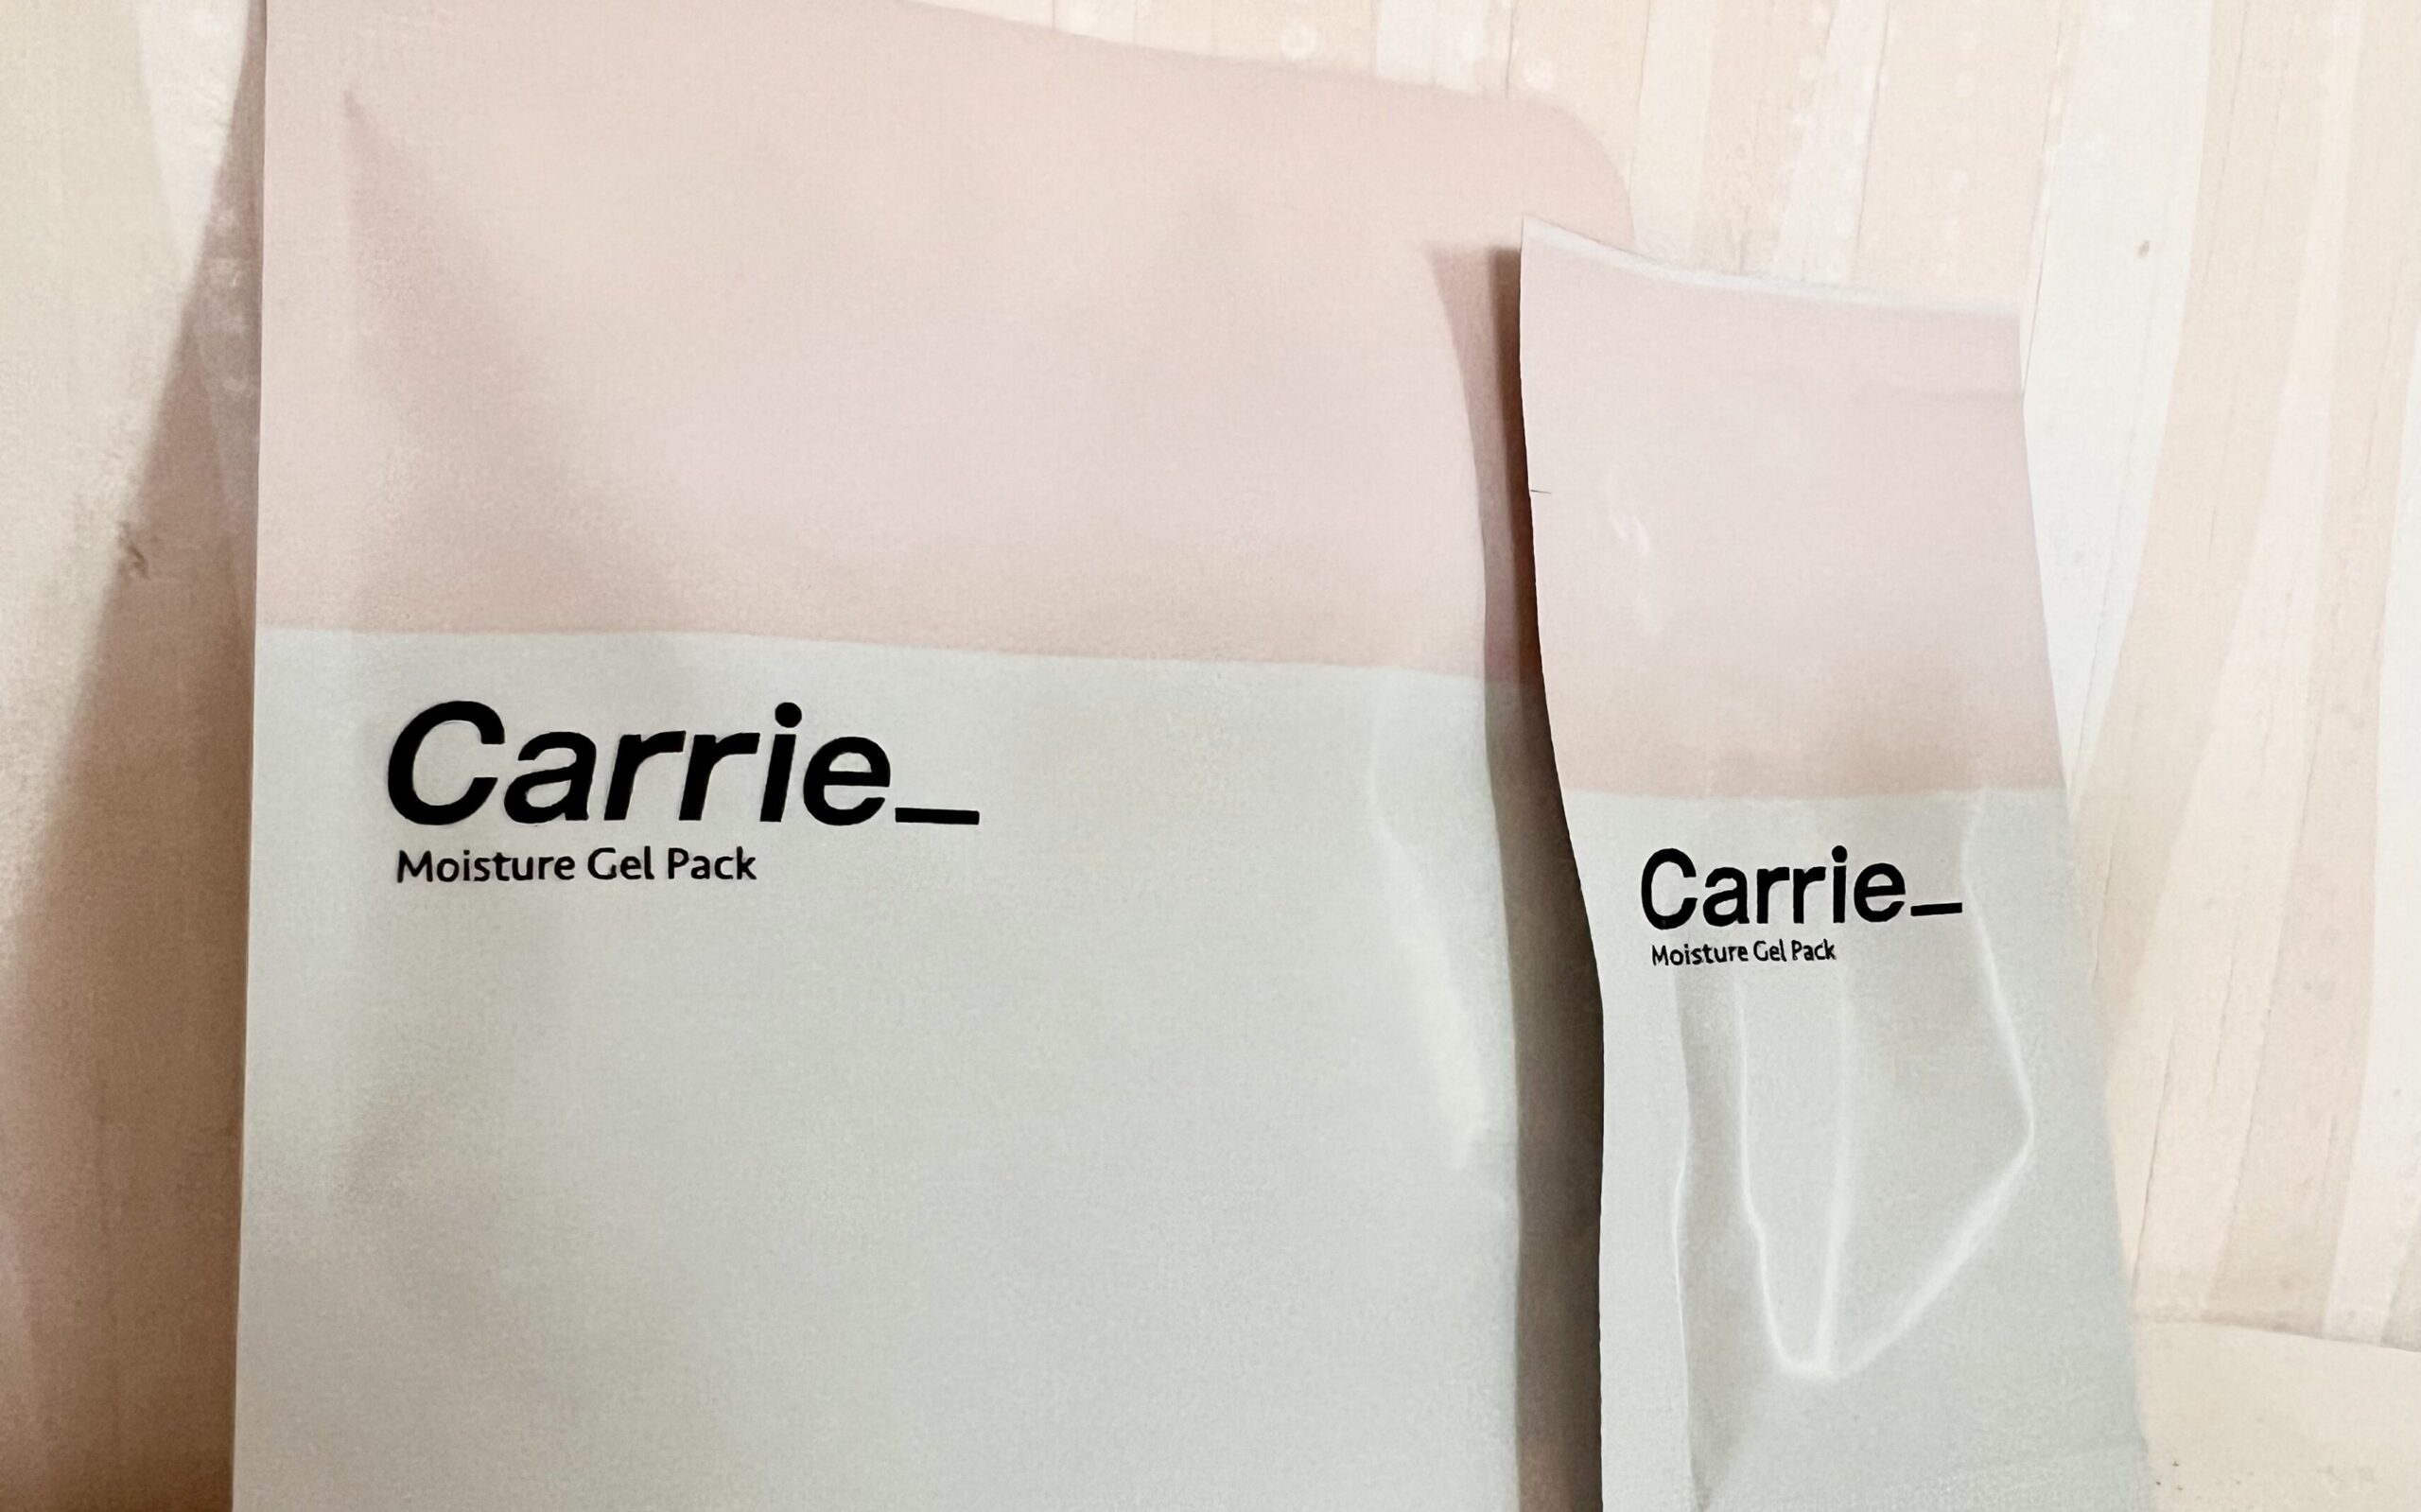 川村真木子さんが開発した炭酸パック「Carrie」のパッケージです。